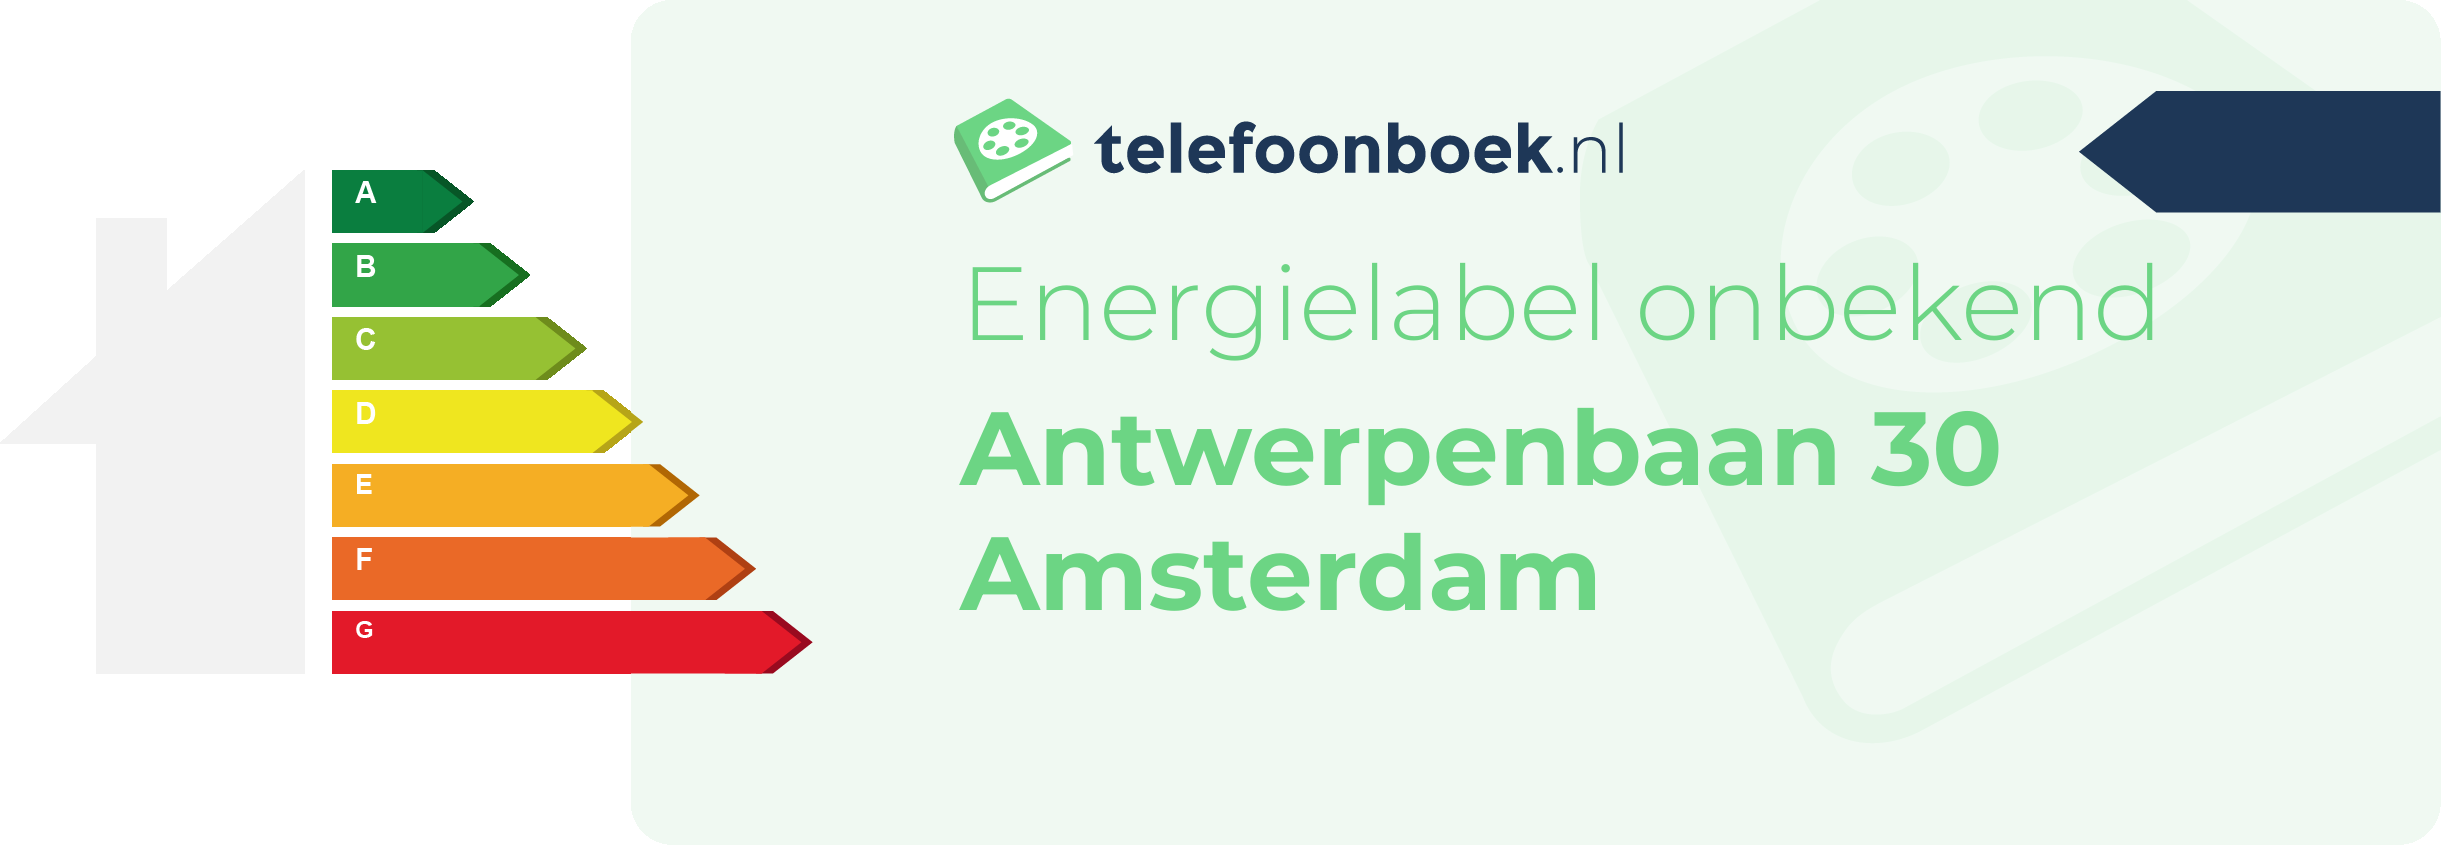 Energielabel Antwerpenbaan 30 Amsterdam